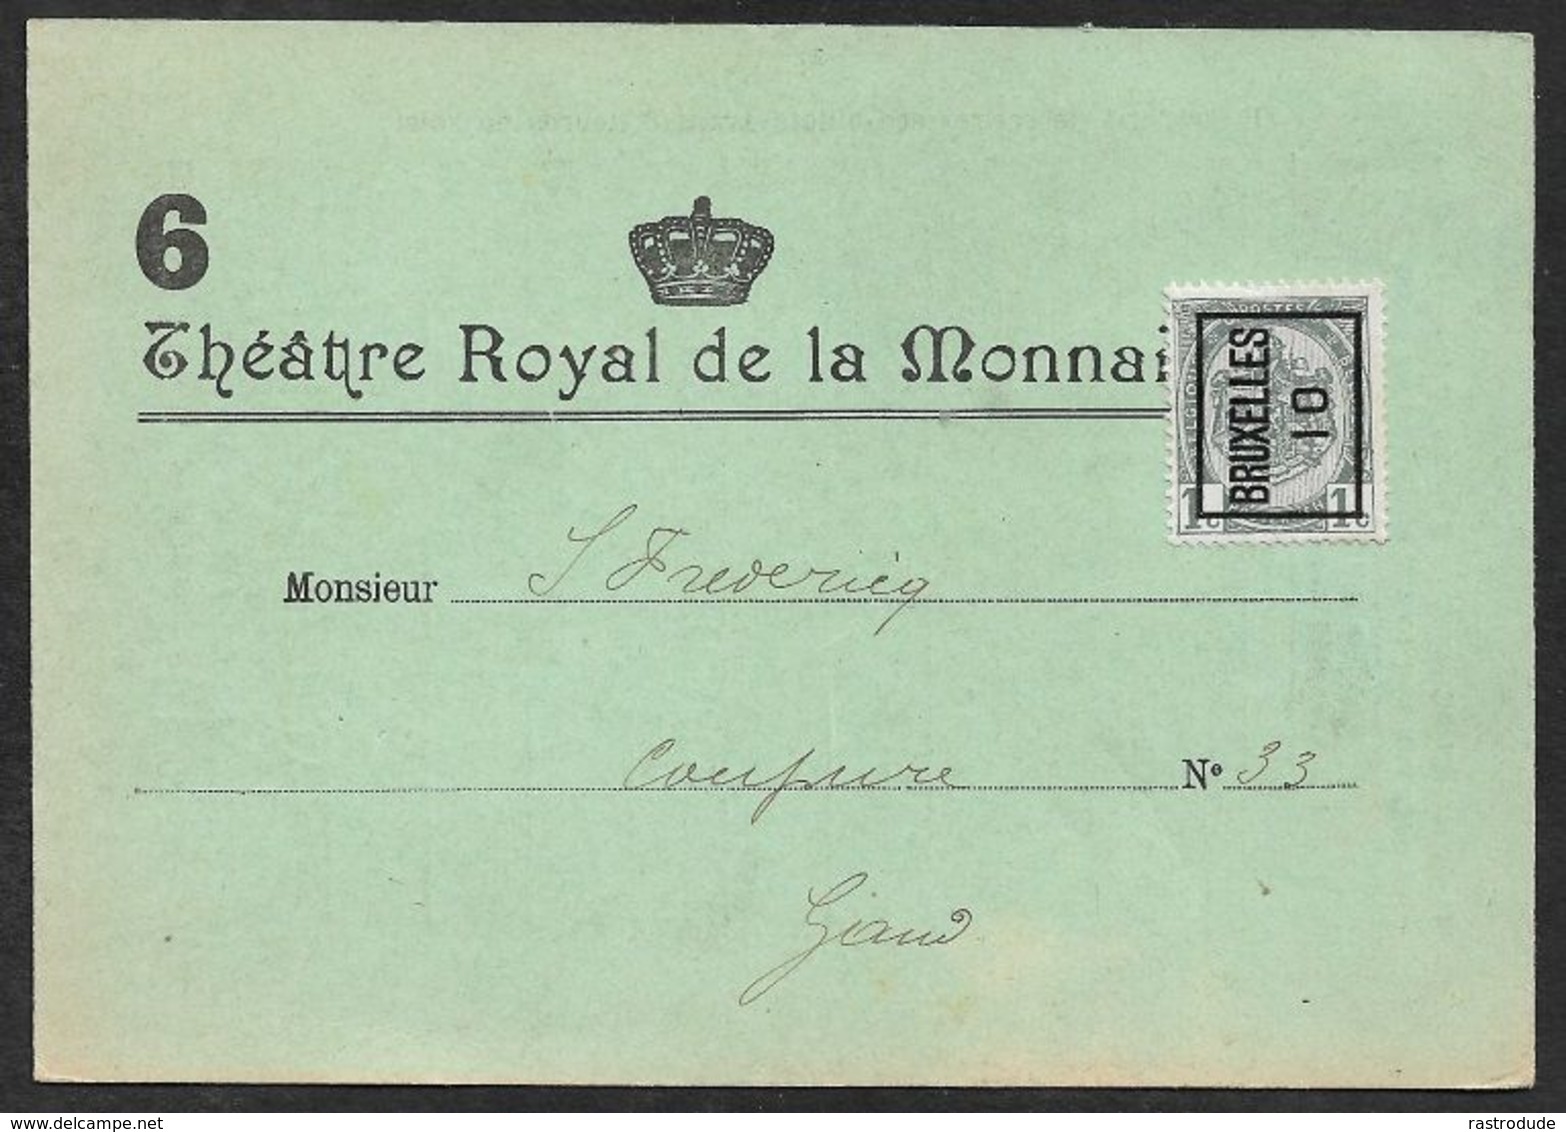 1910 BELGIQUE - PRÉOBLITÉRÉ CP A GAND  - IMPRIMÉ ILLUSTRÉ PUBLICITÉ  - THEATRE ROYAL DE LA MONNAIE - PIÈCE DE THÉÂTRE - Rollini 1910-19